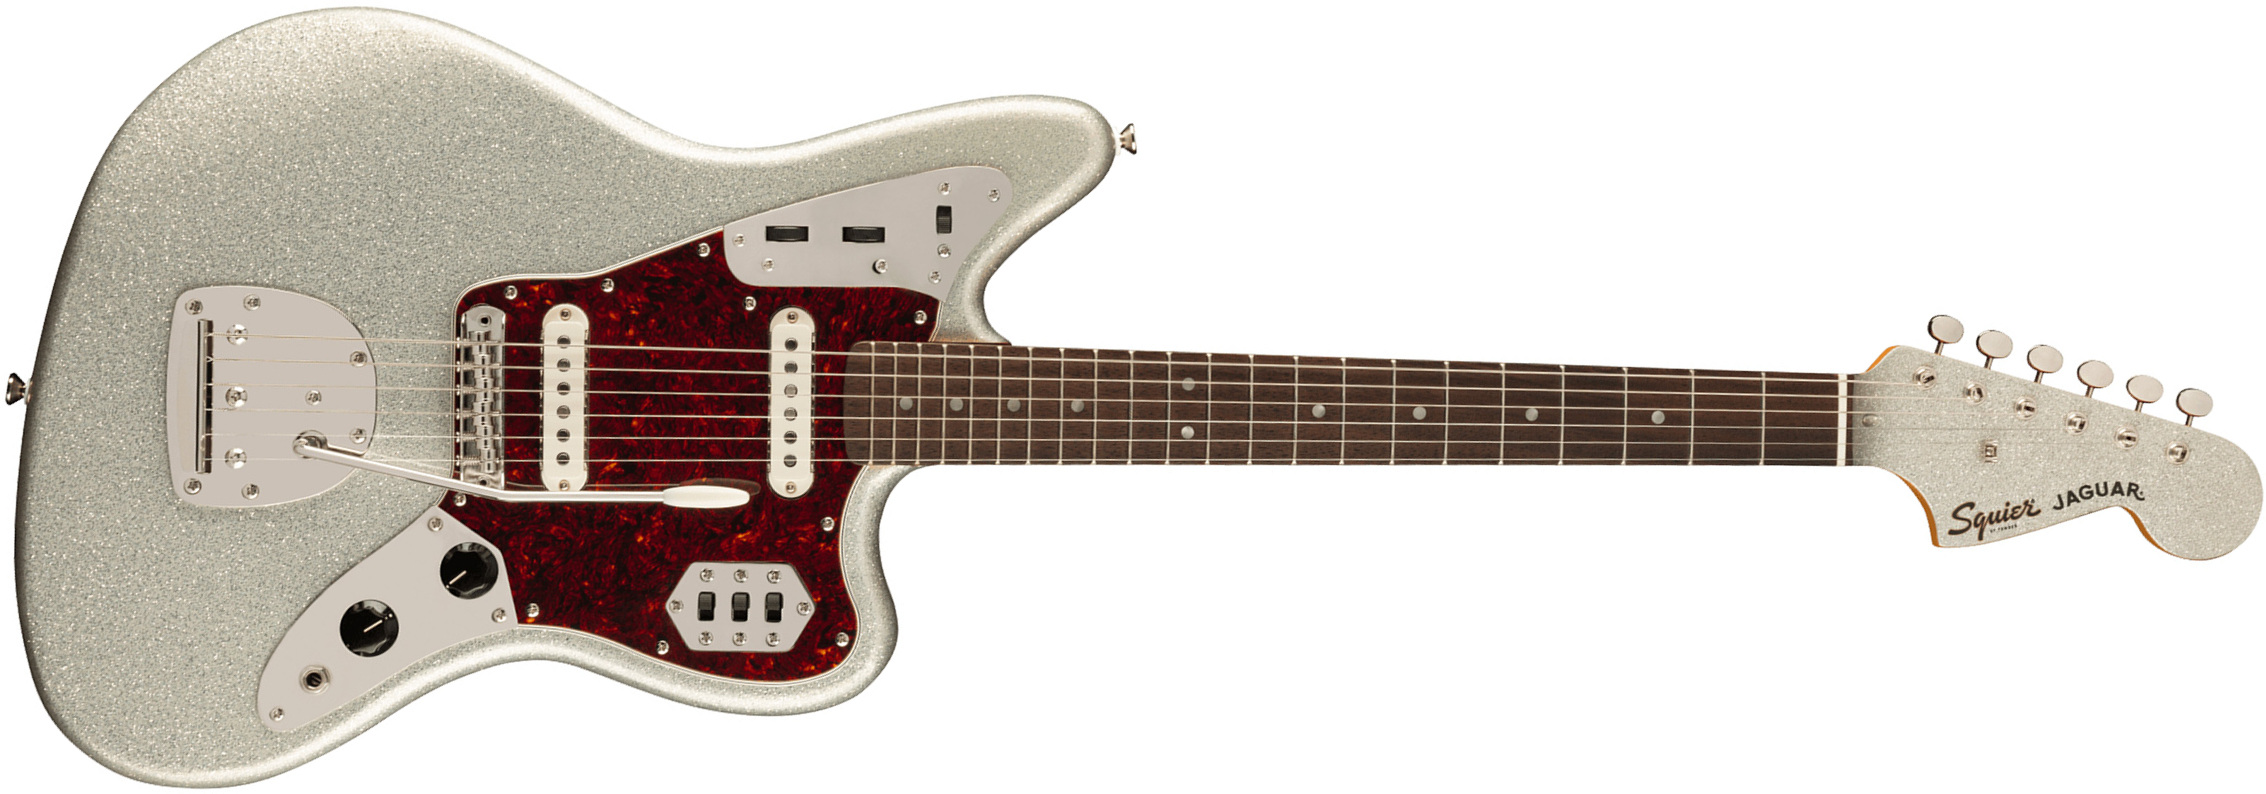 Squier Jaguar 60s Classic Vibe Fsr Ltd 2s Trem Lau - Silver Sparkle Matching Headstock - Retro-rock elektrische gitaar - Main picture